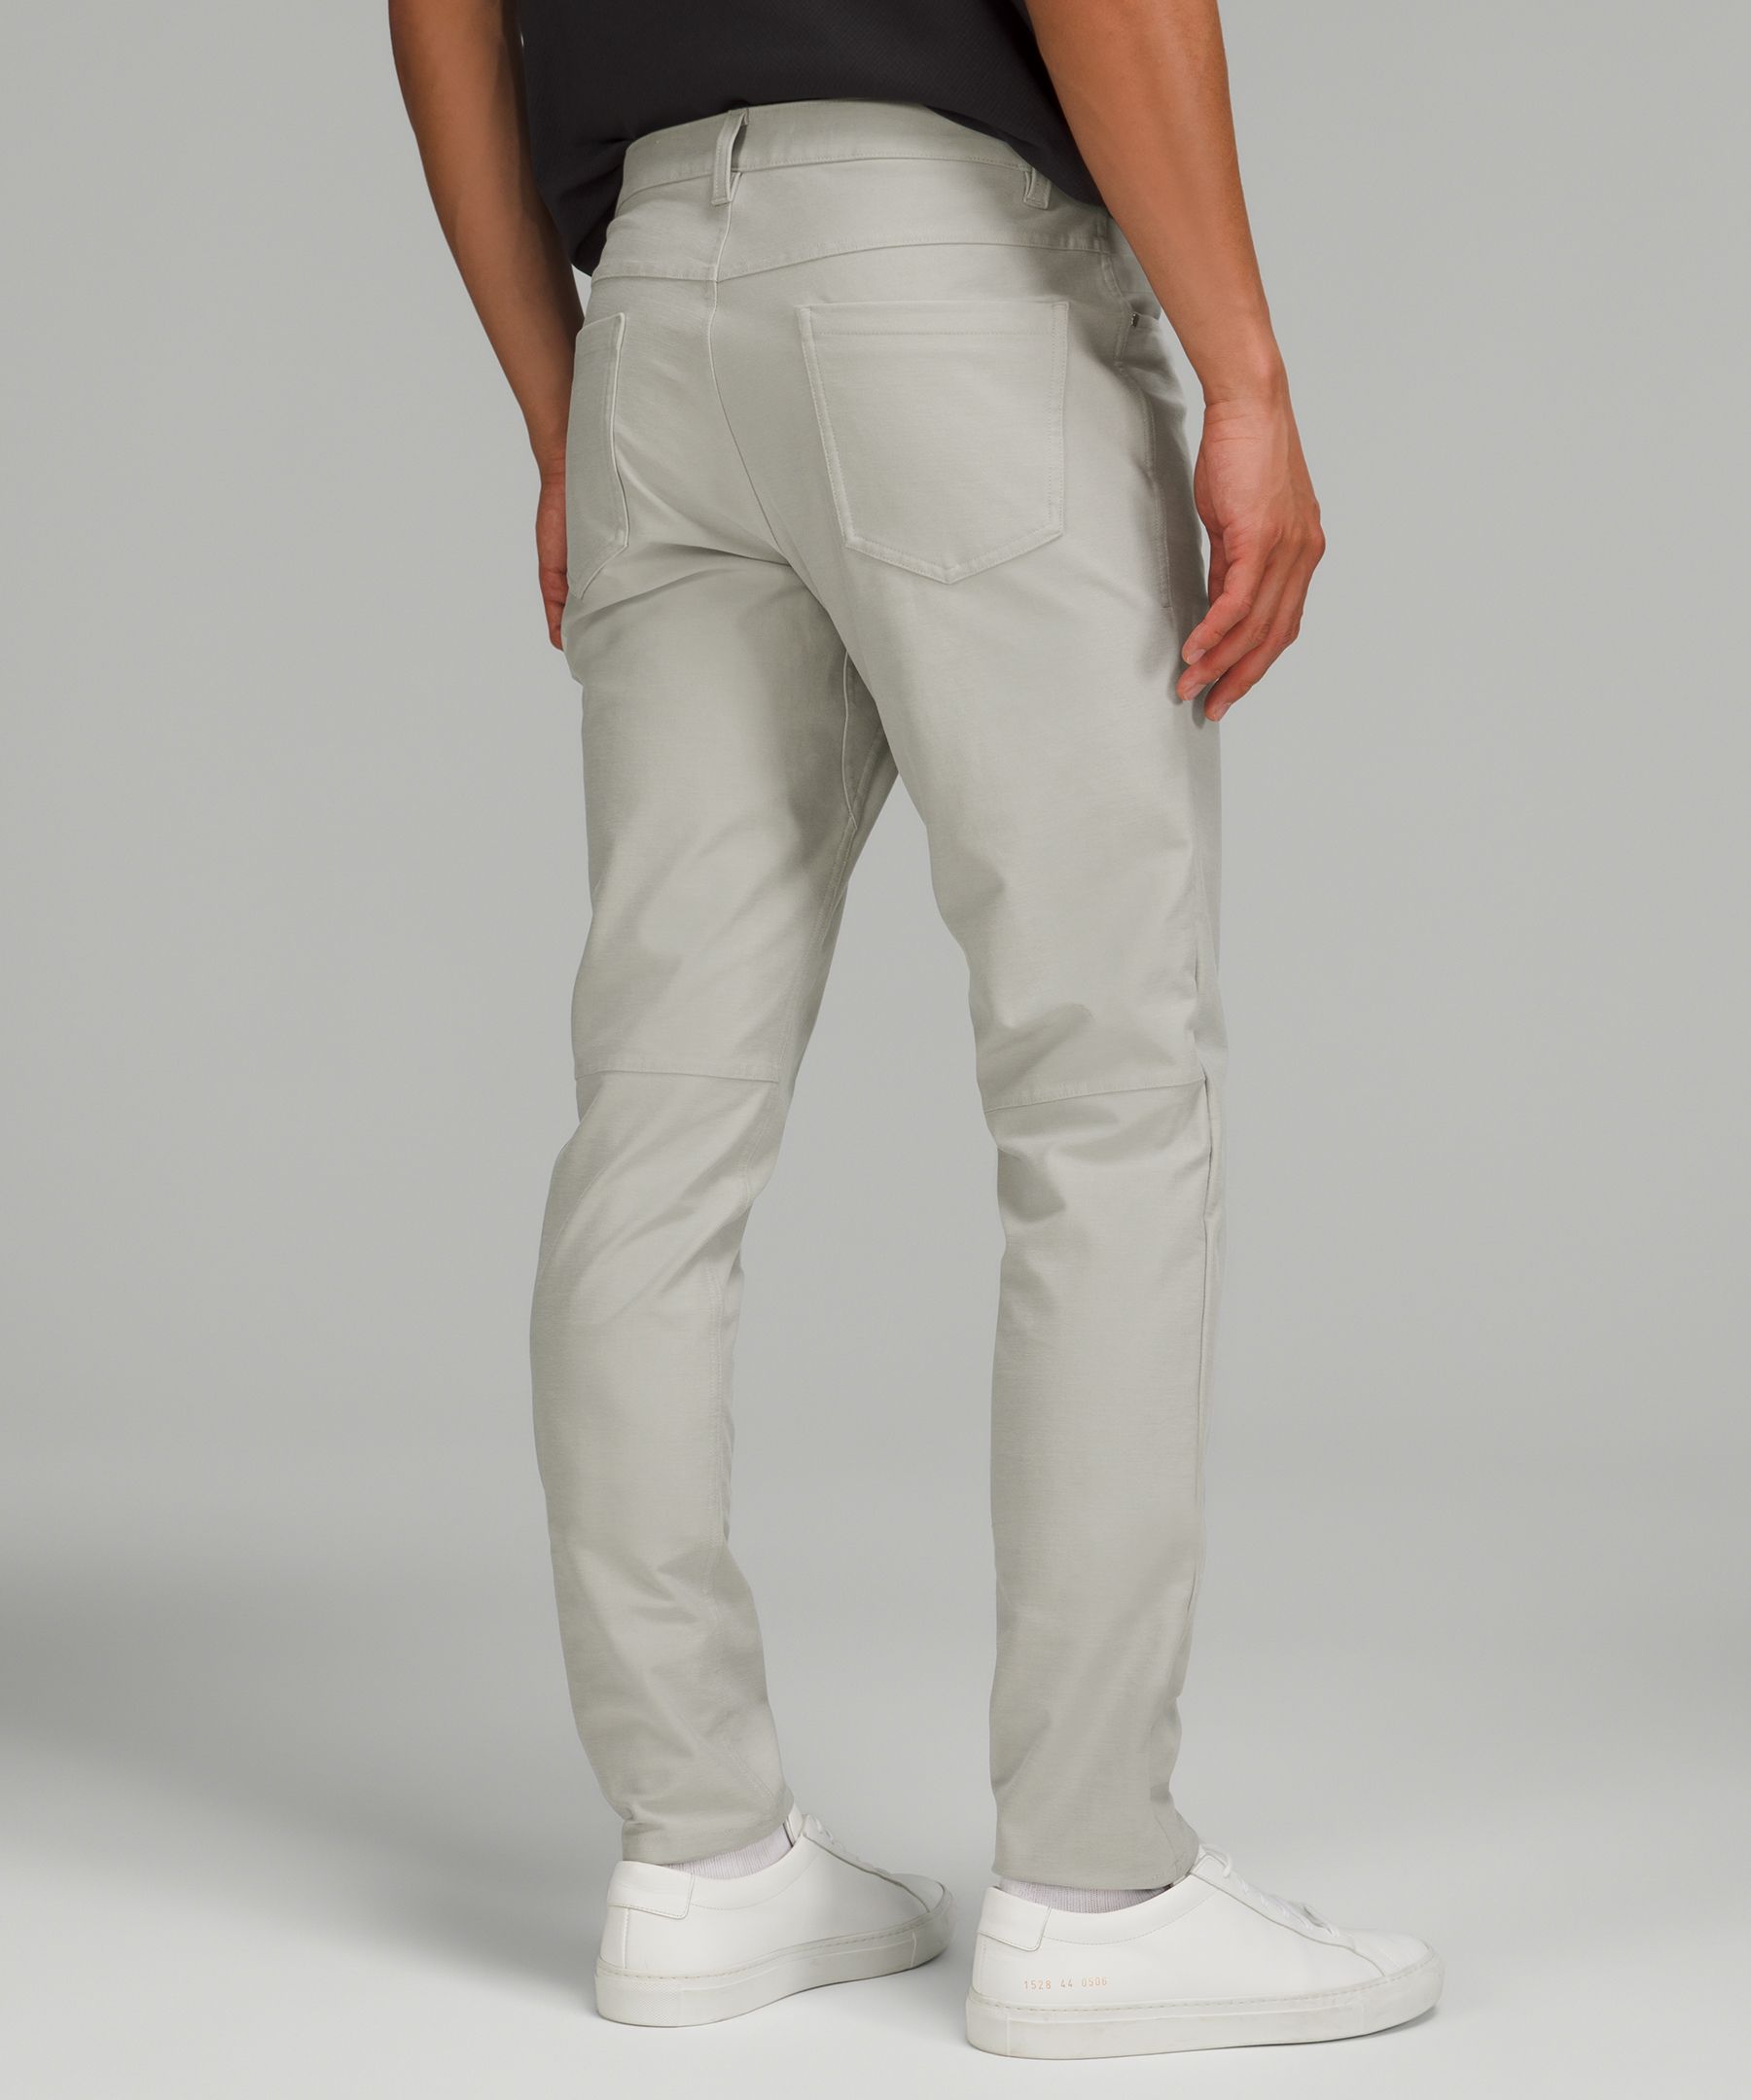 ABC Slim-Fit 5 Pocket Pant 32L *Utilitech, Men's Trousers, lululemon